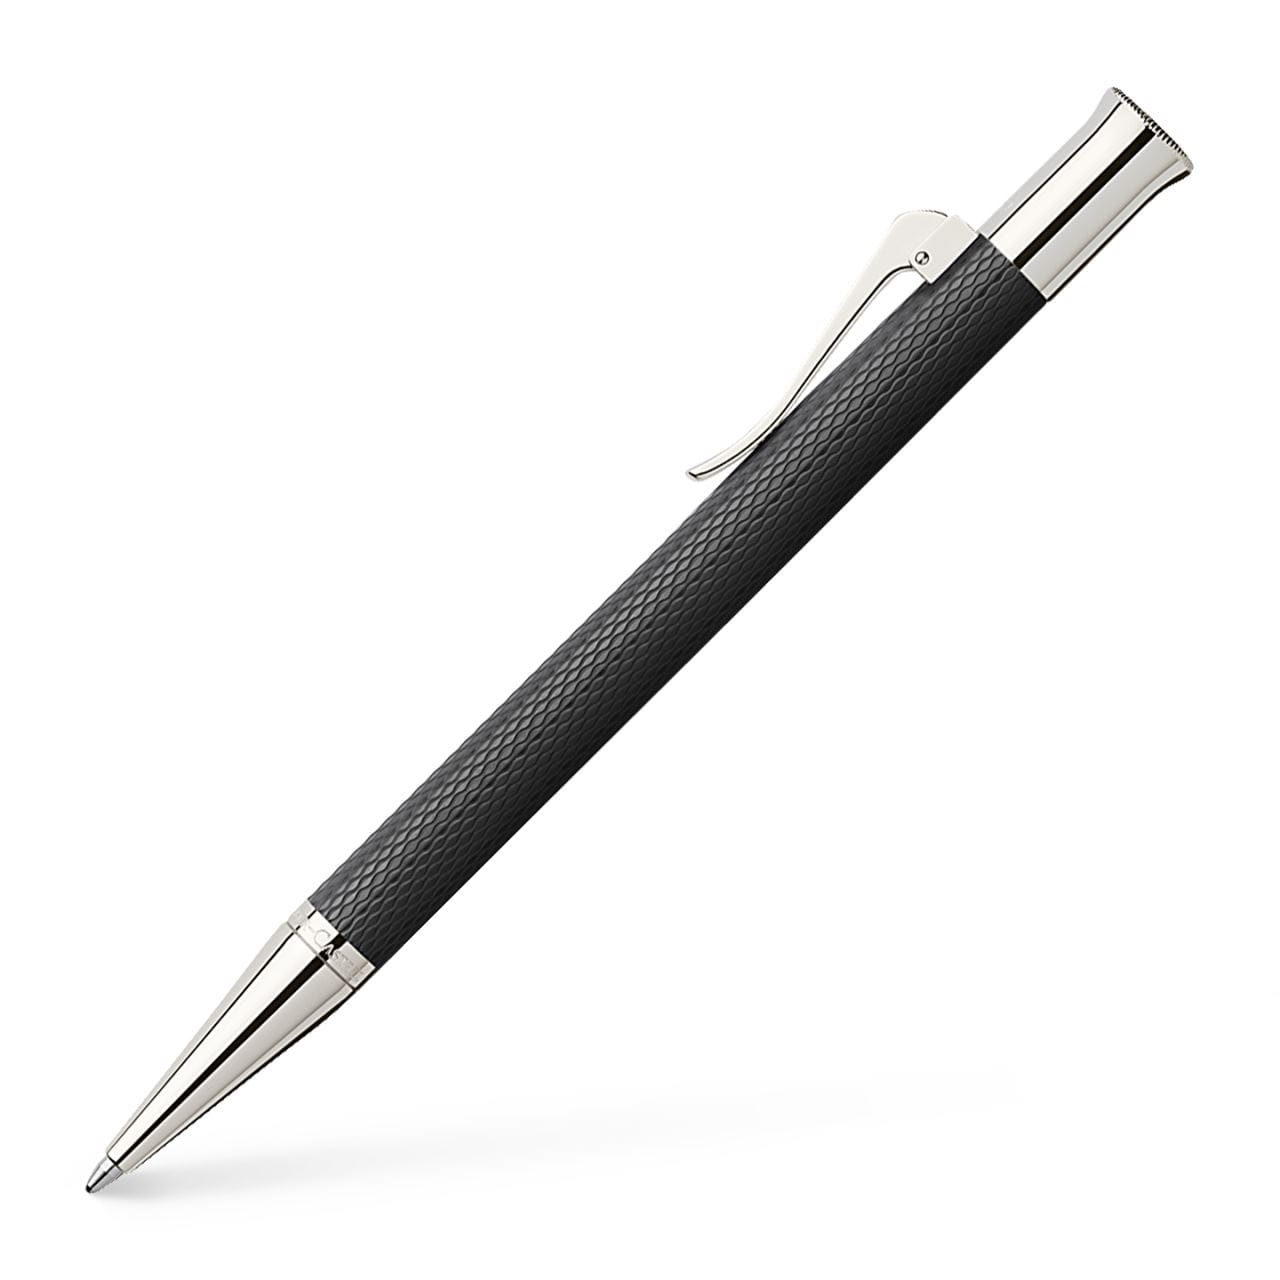 Graf-von-Faber-Castell - Ballpoint pen Guilloche Black